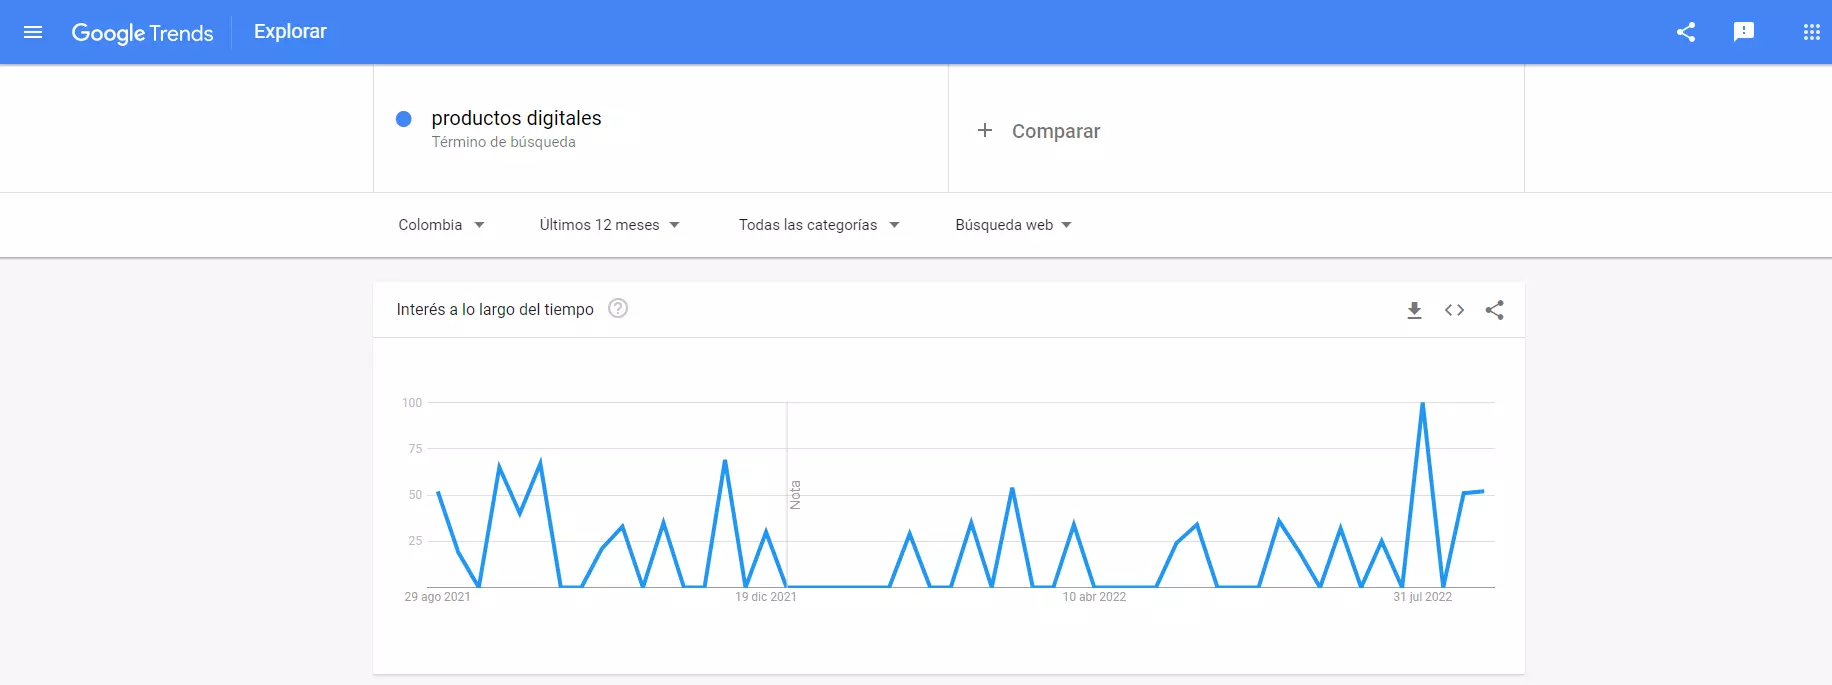 Imagen de la búsqueda productos digitales en Google Trends.